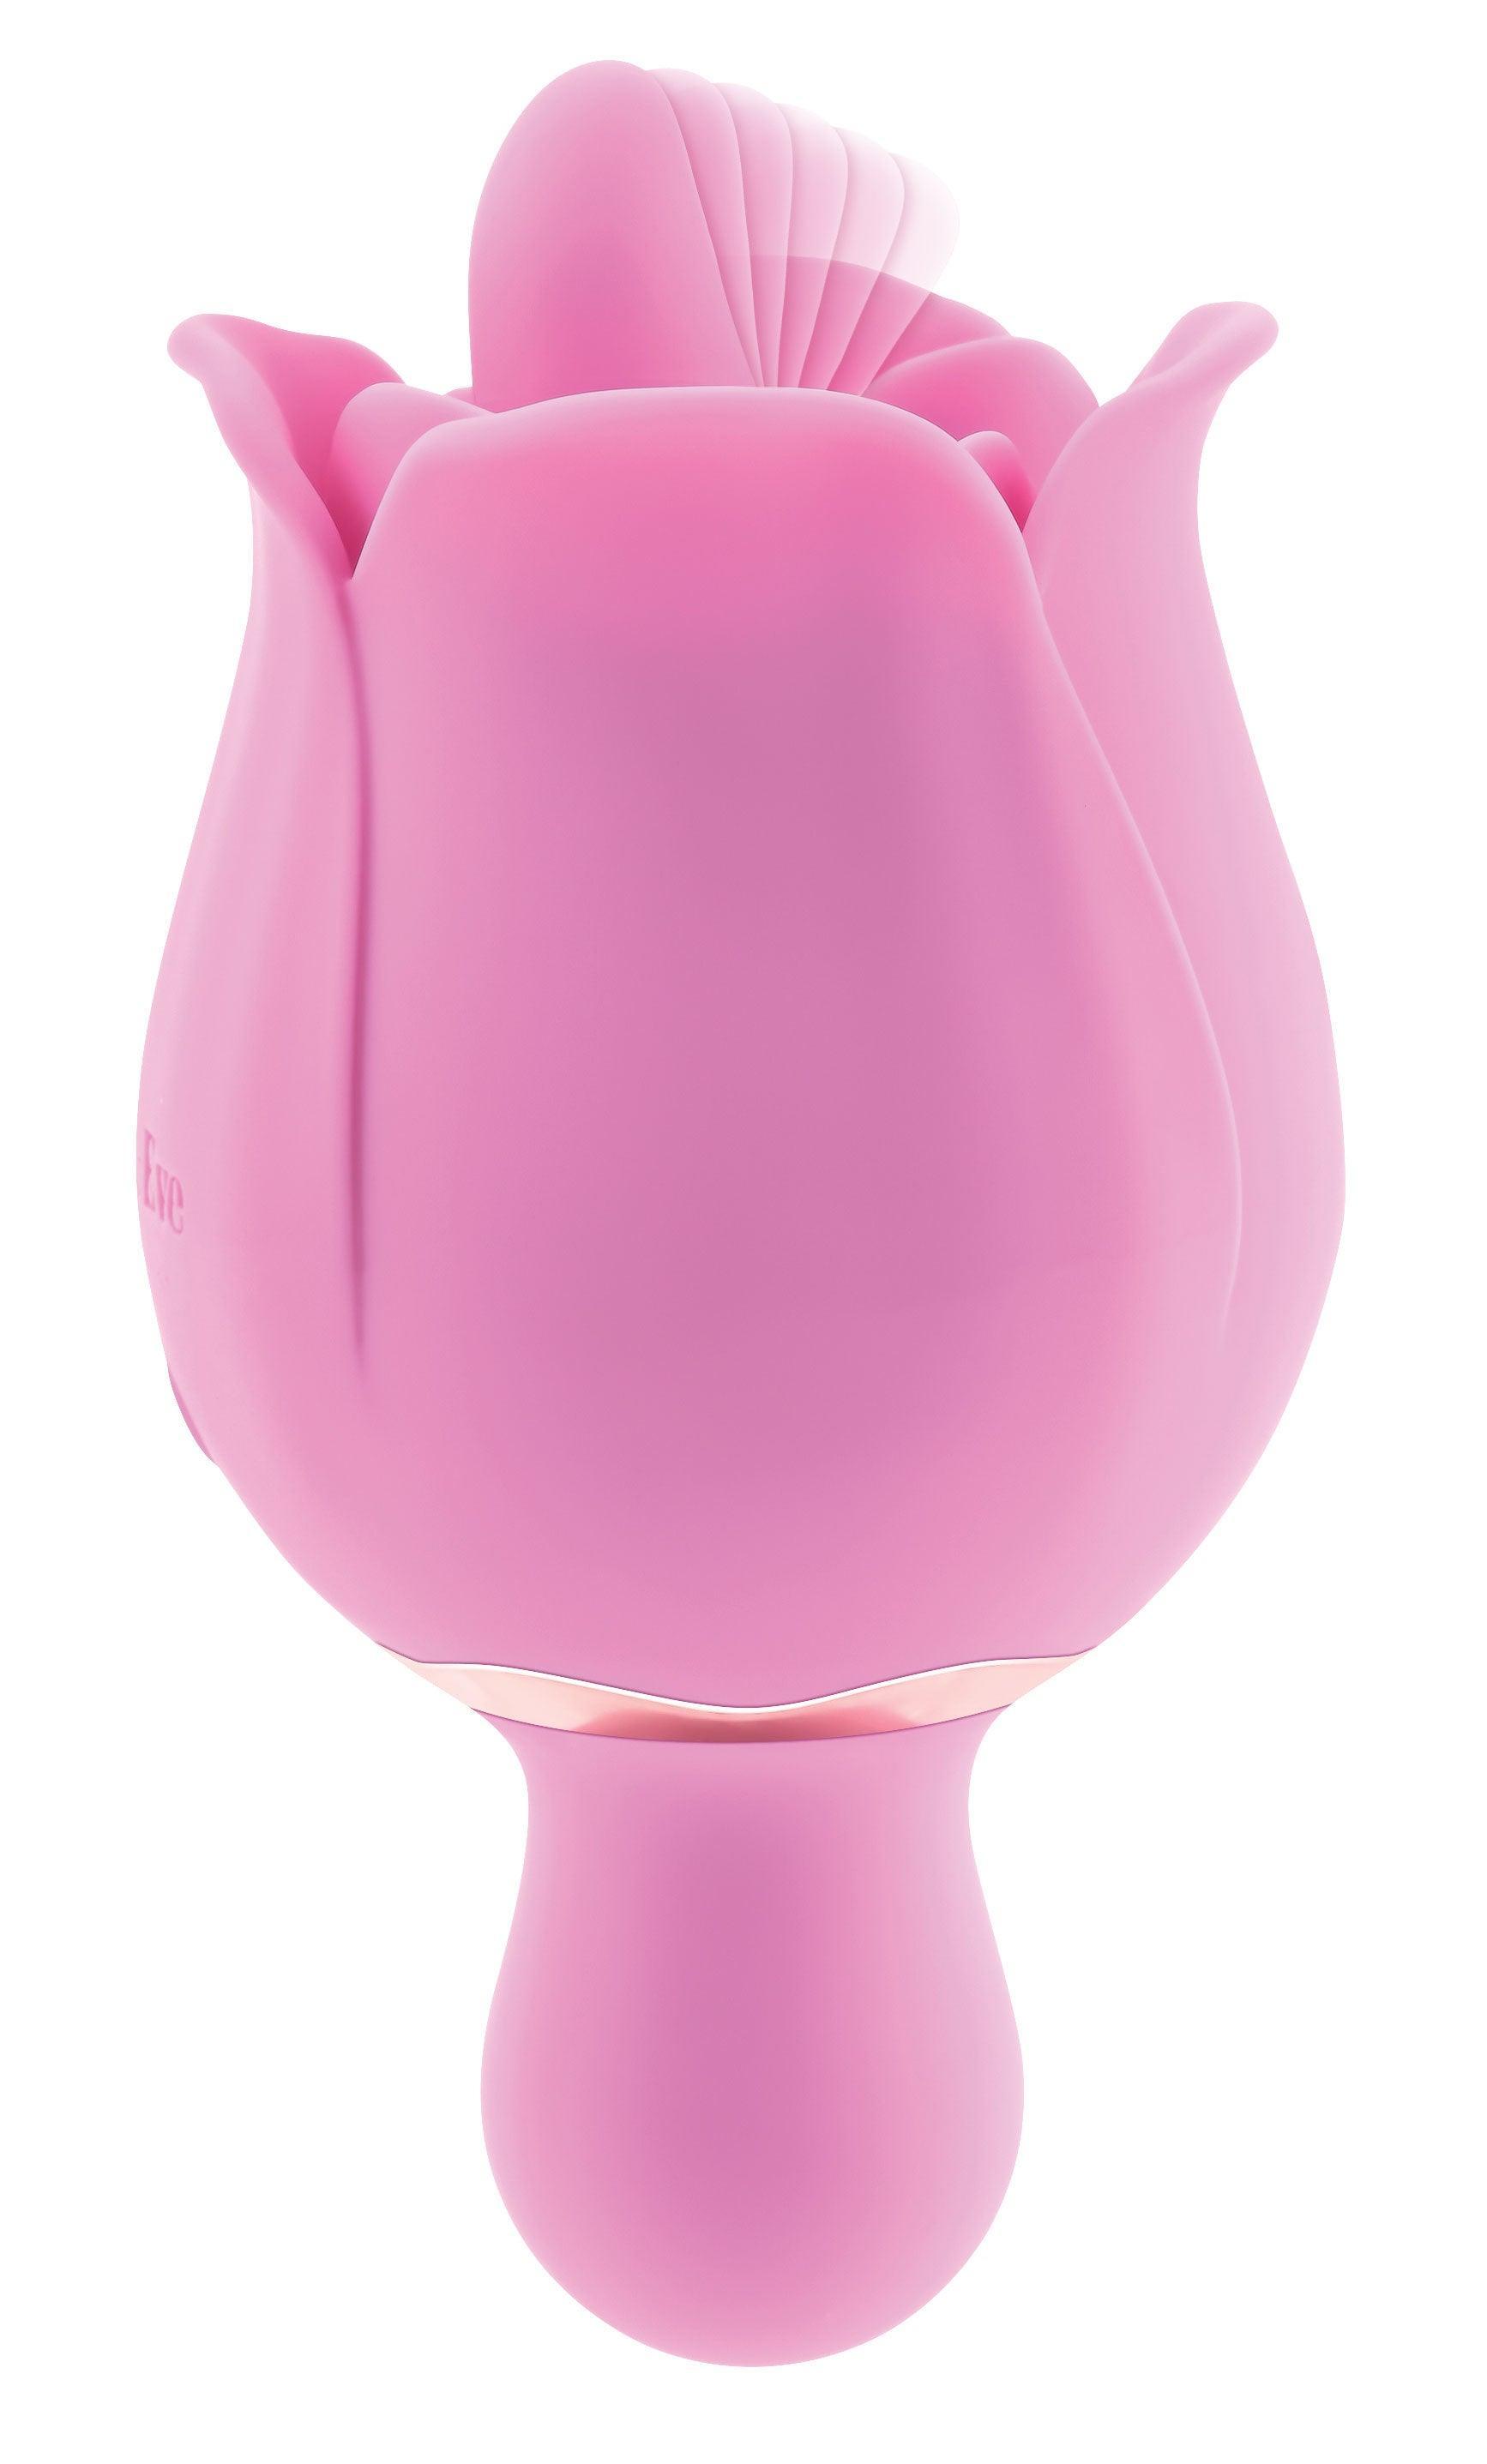 Eve's Ravishing Clit Flicking Rose - Pink - My Sex Toy Hub